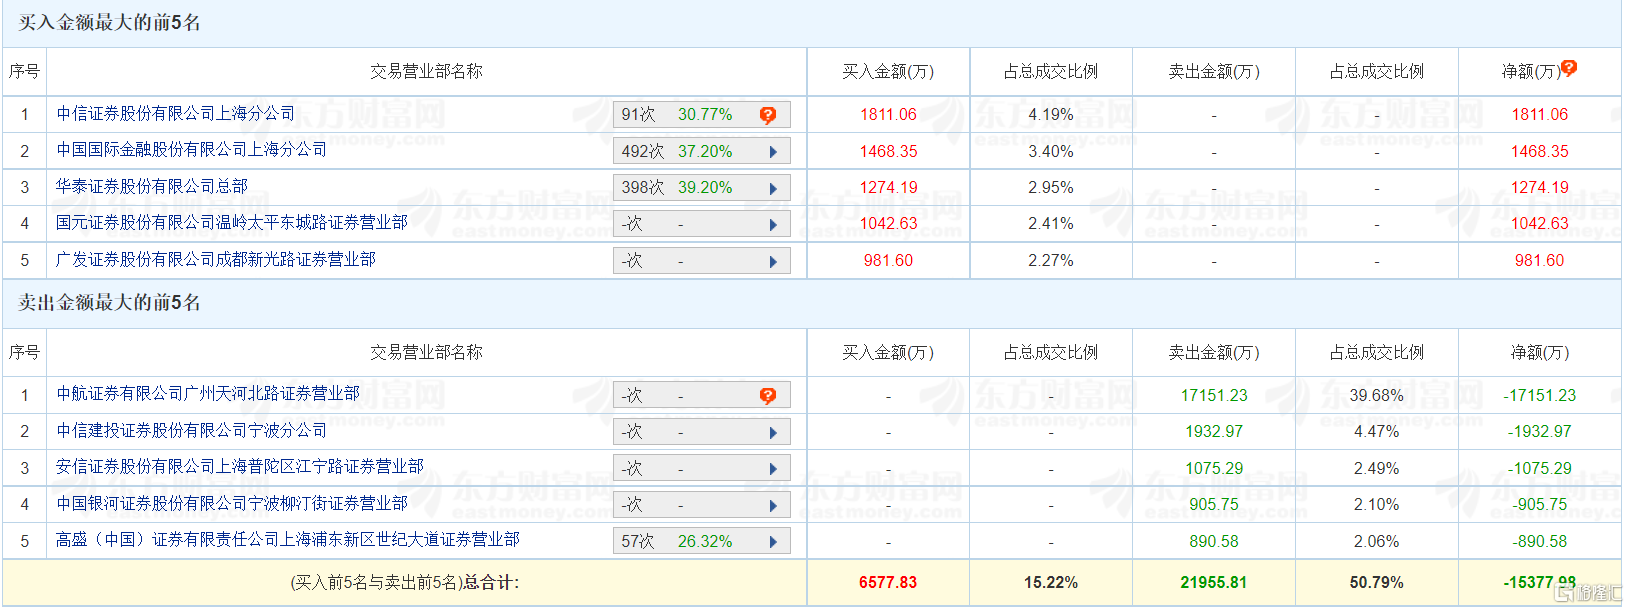 龙虎榜 | 君禾股份再跌8.82% 中航证券广州天河北路净卖出1.72亿元